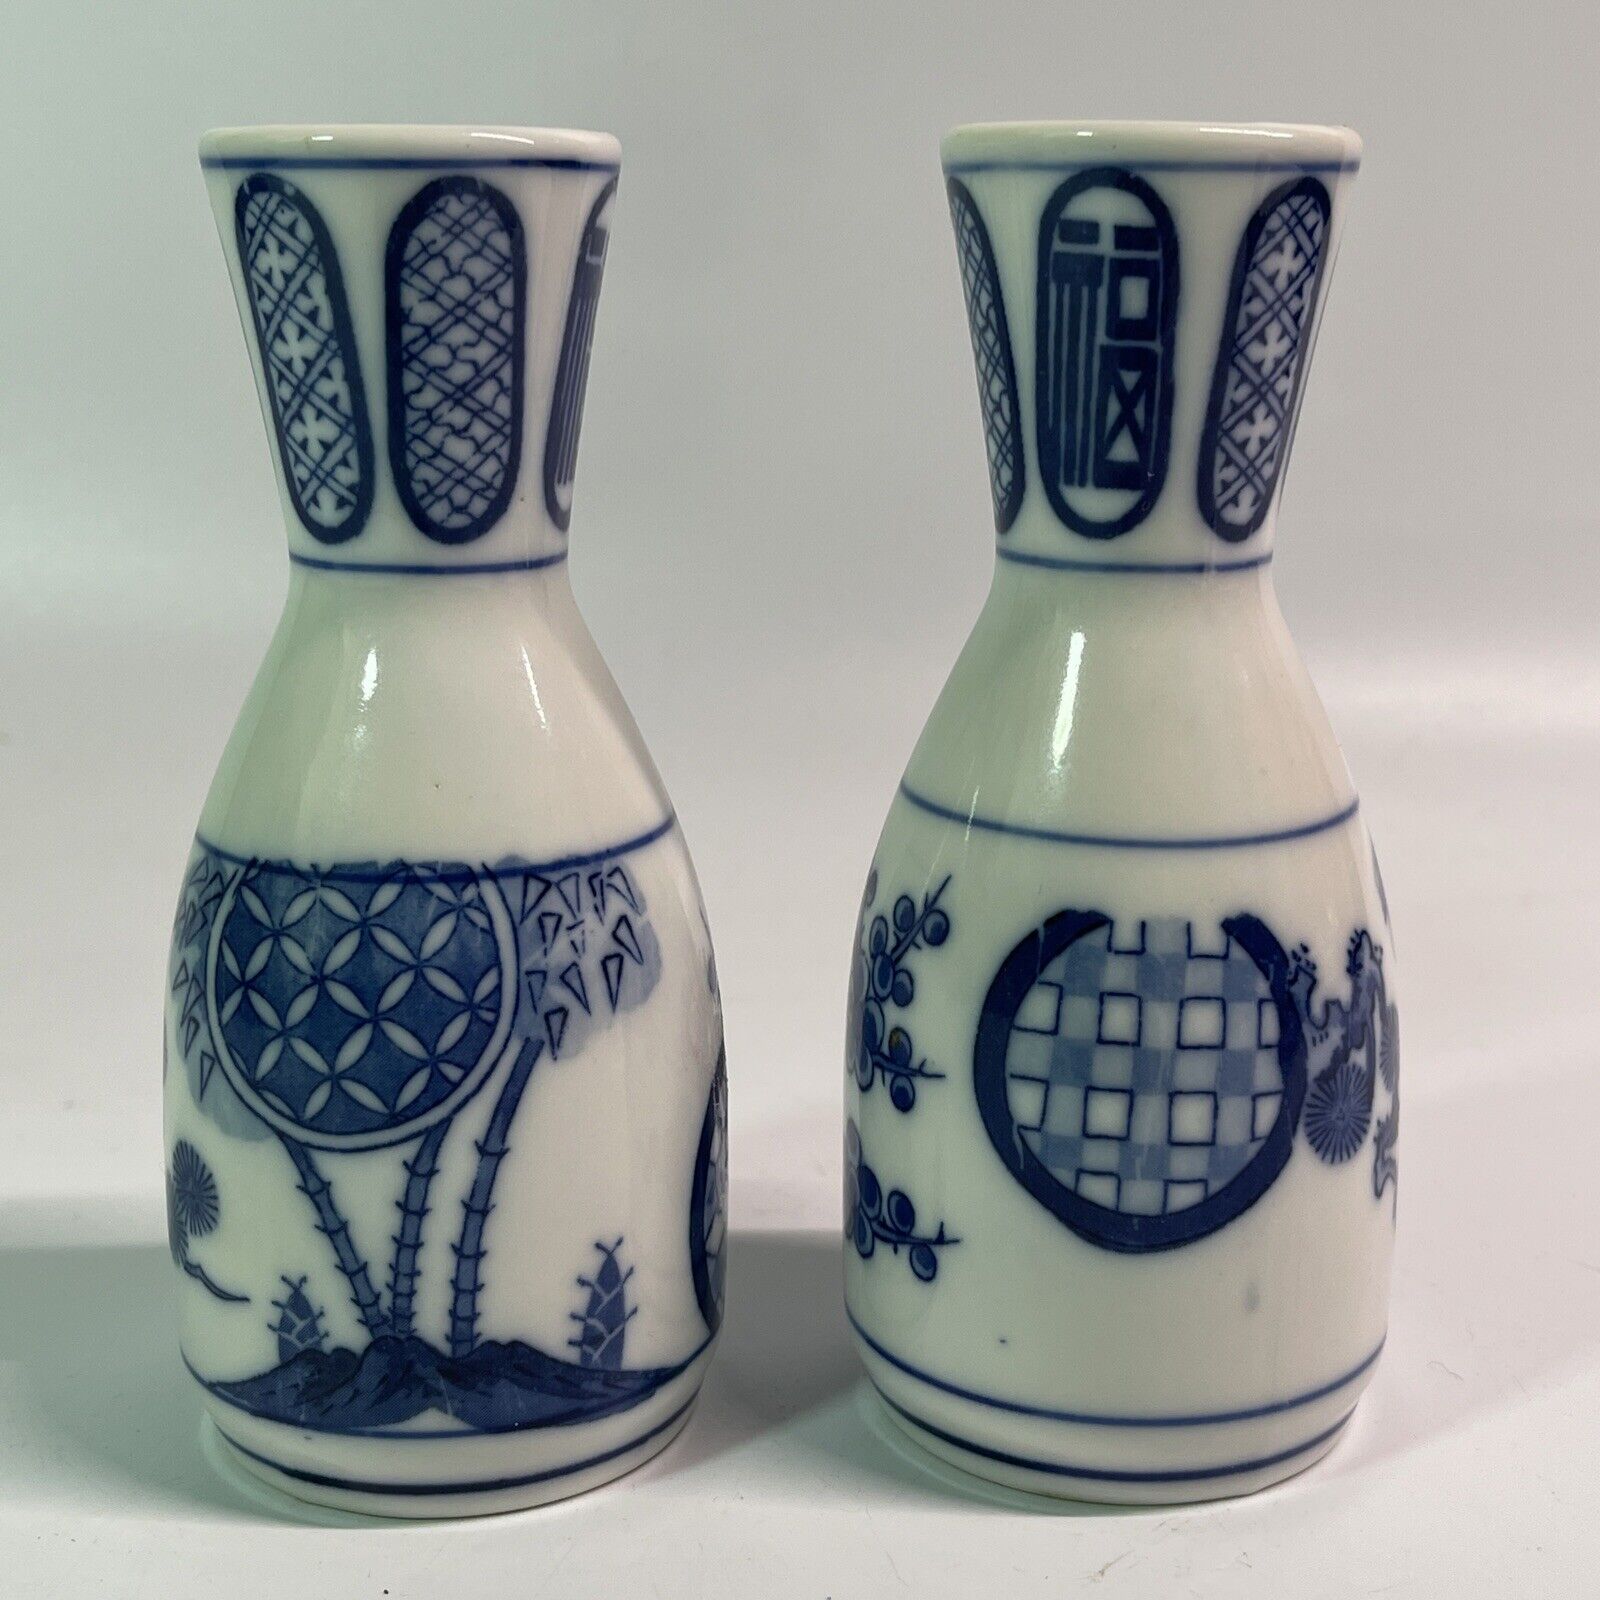 Vintage Japanese Sake Bottle Porcelain Ceramic Set of 2 Made in Japan Maker? Y1